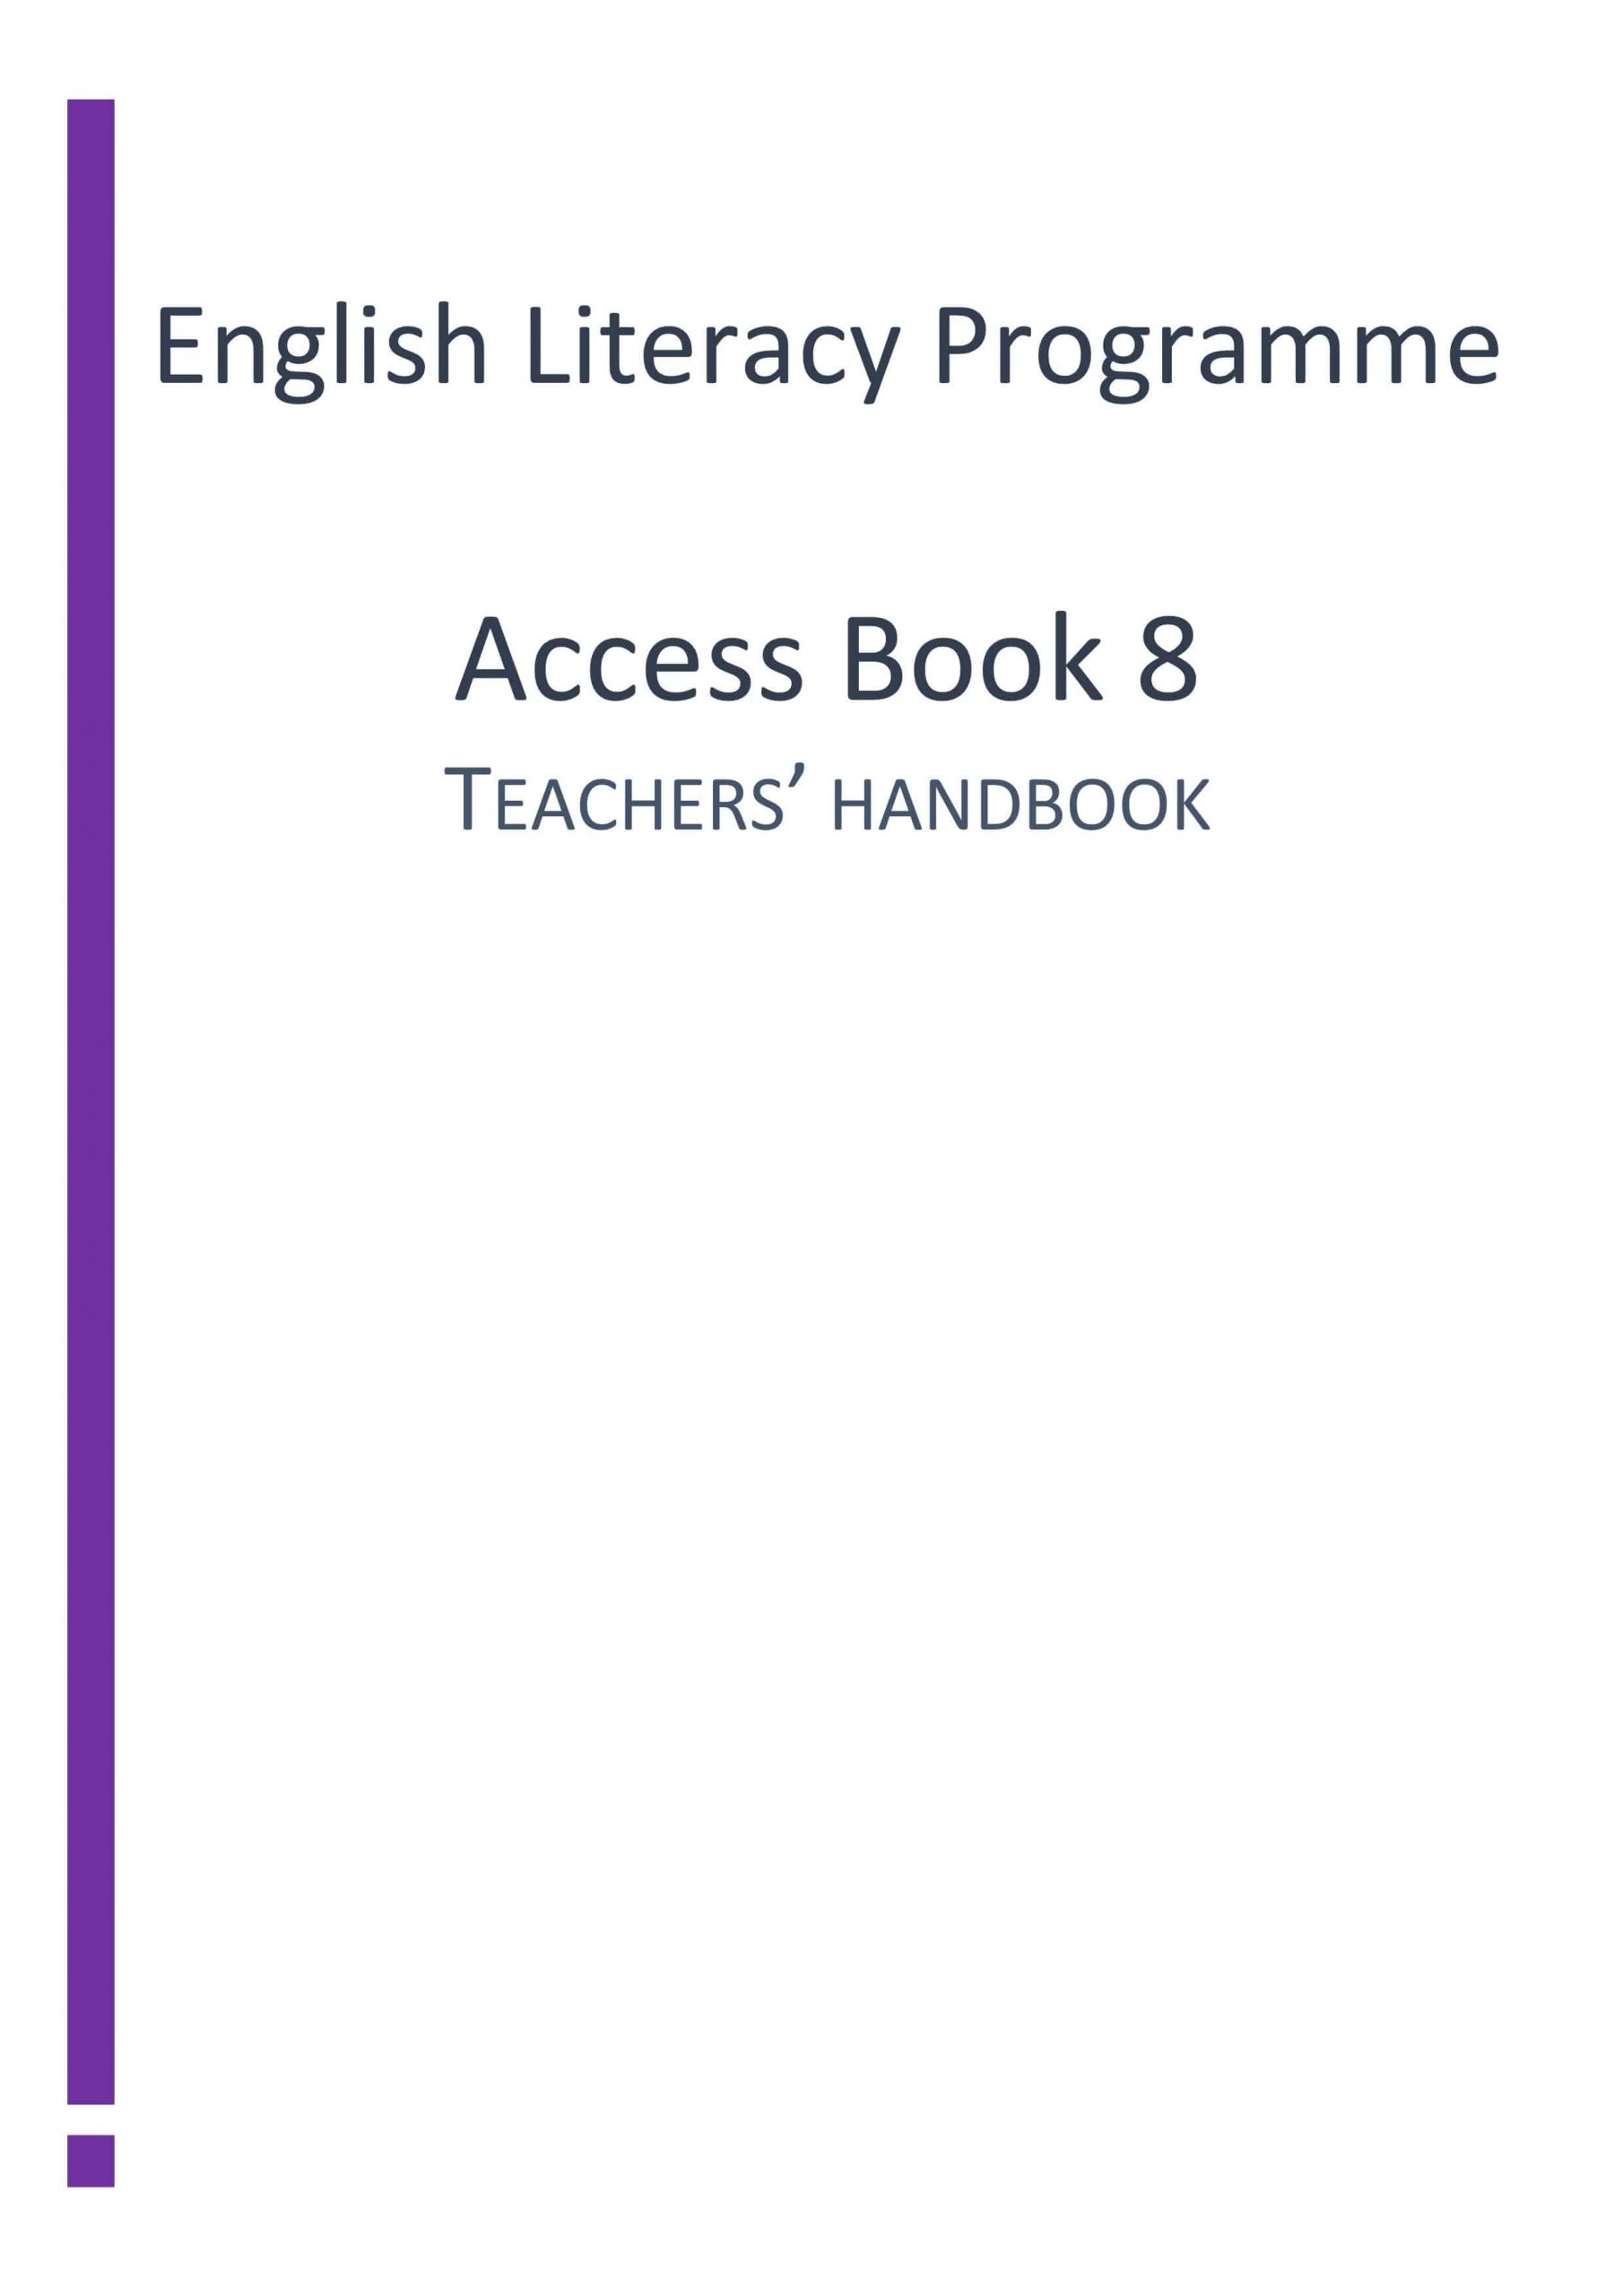 دليل المعلم Access Book الفصل الدراسي الثاني الصف الثامن مادة اللغة الانجليزية 